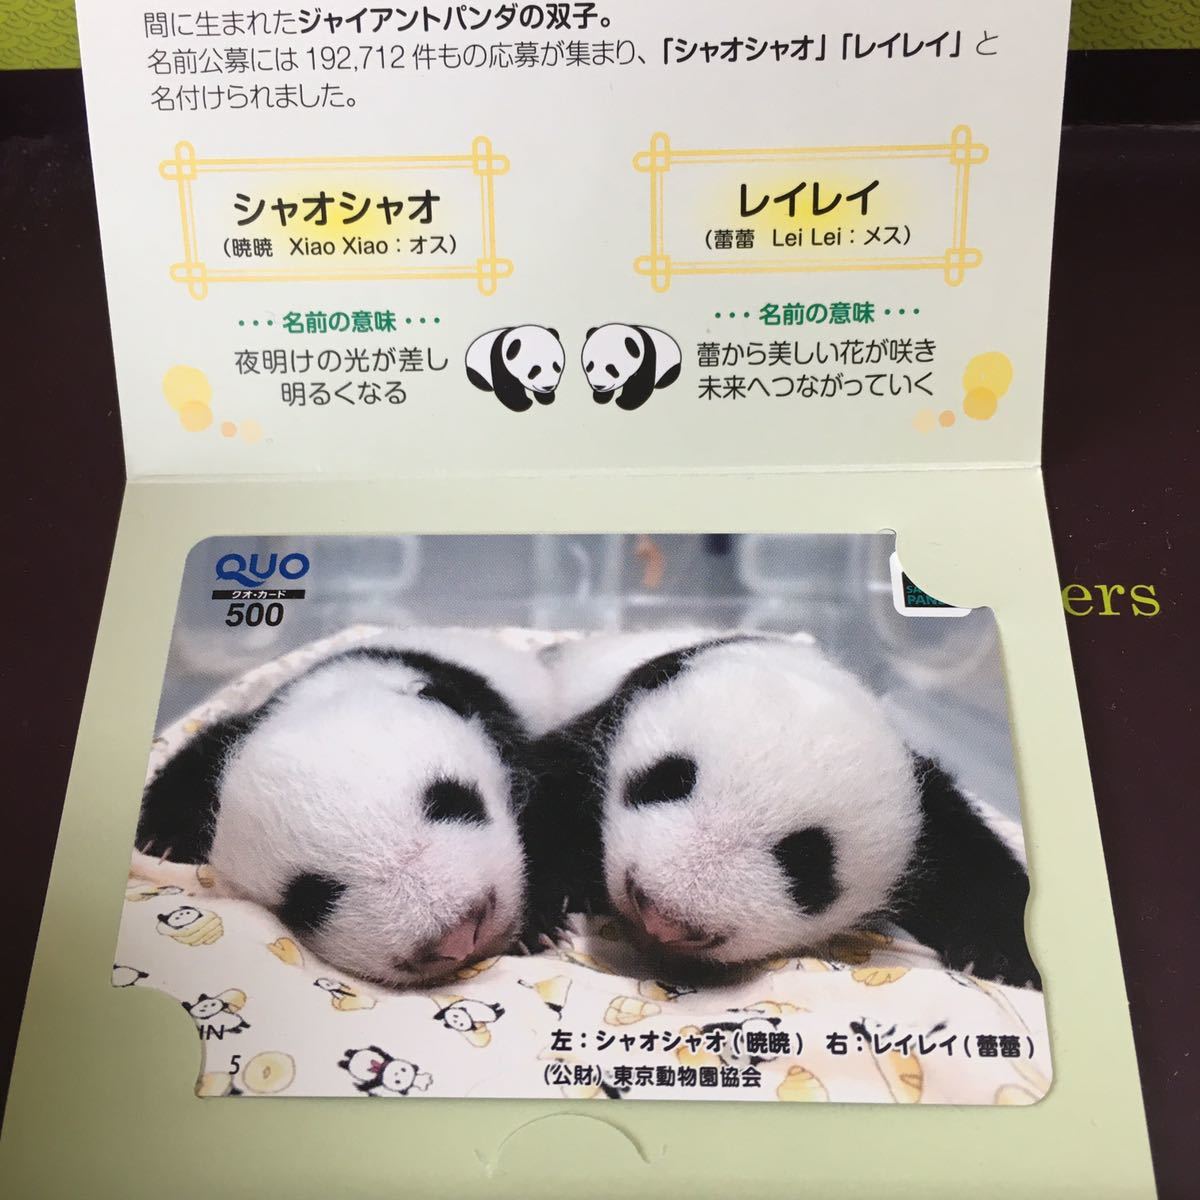 限定 クオカード 上野動物園 双子パンダ シャオシャオ＆レイレイ 専用 